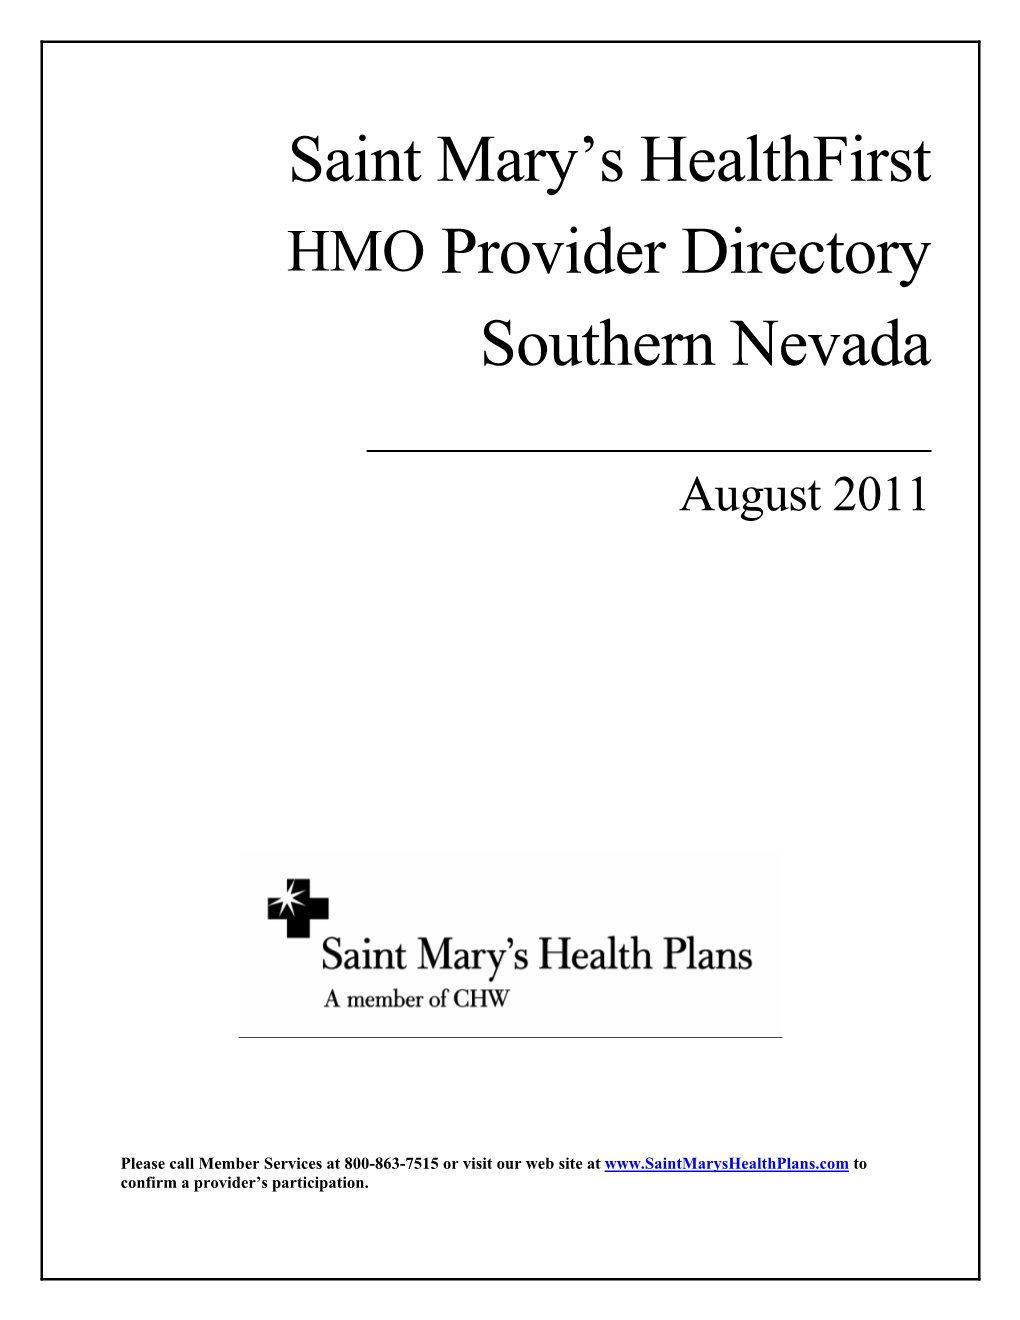 Saint Mary's Healthfirst HMO Provider Directory Southern Nevada